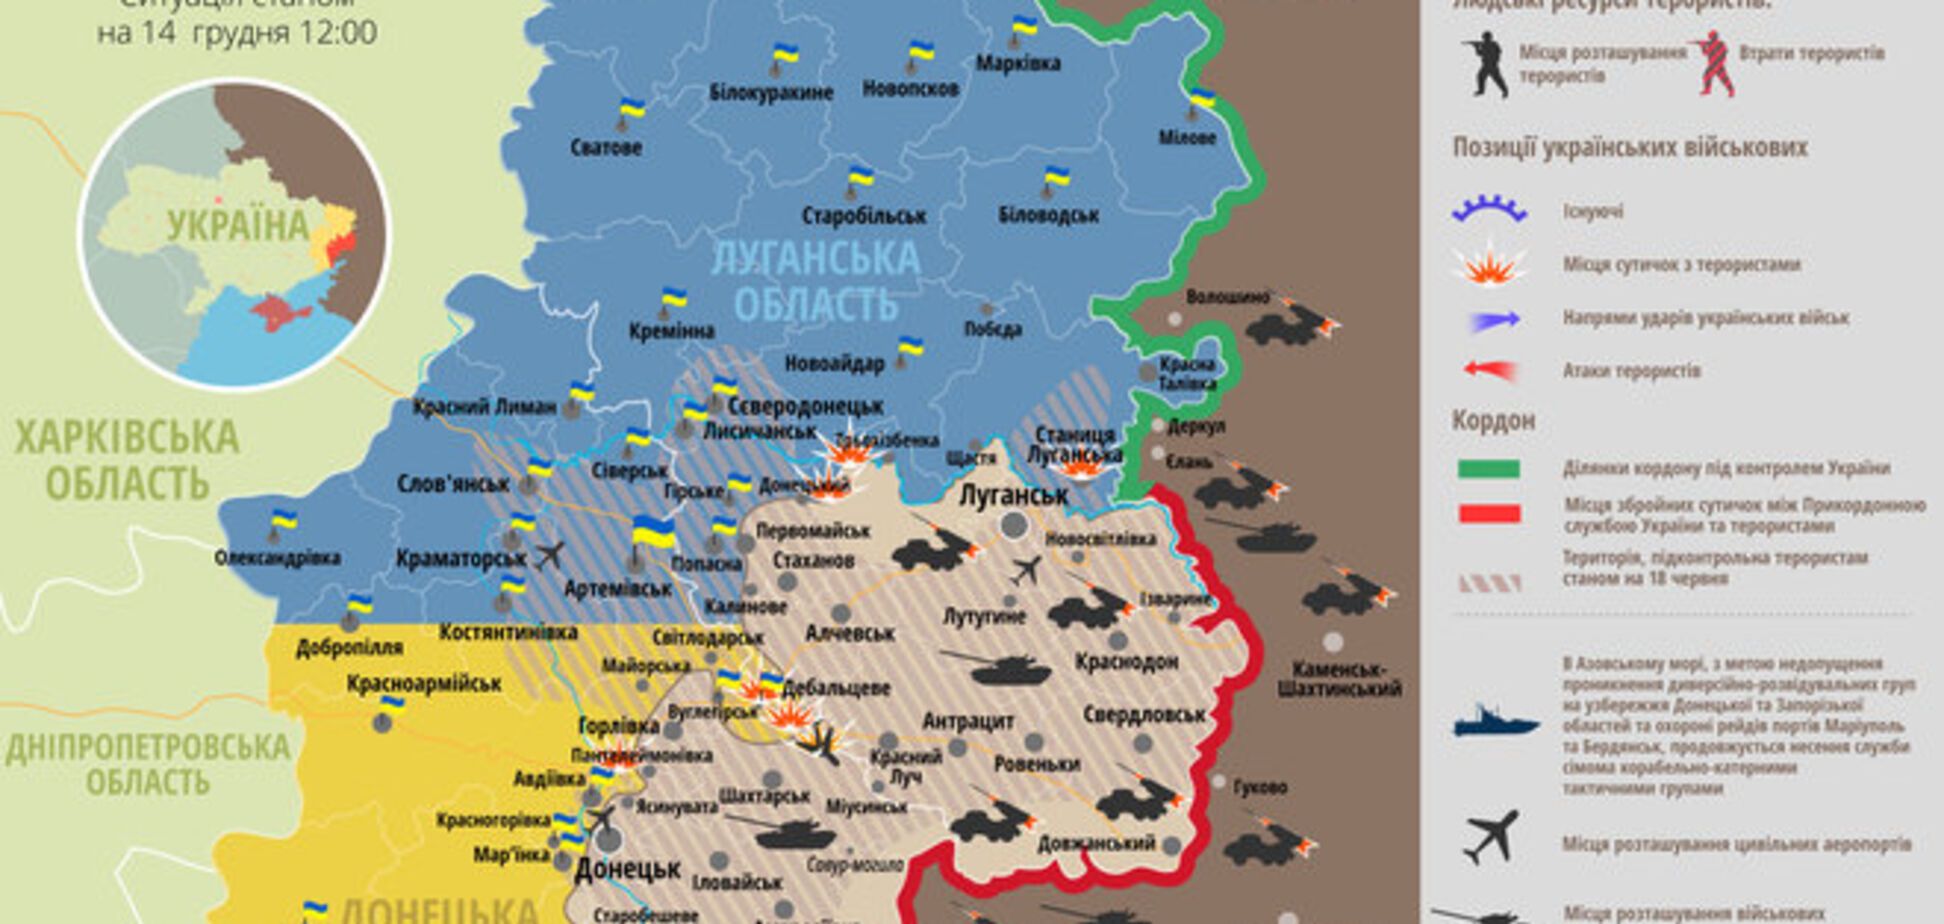 'Перемирие' на Донбассе: опубликована актуальная карта зоны АТО